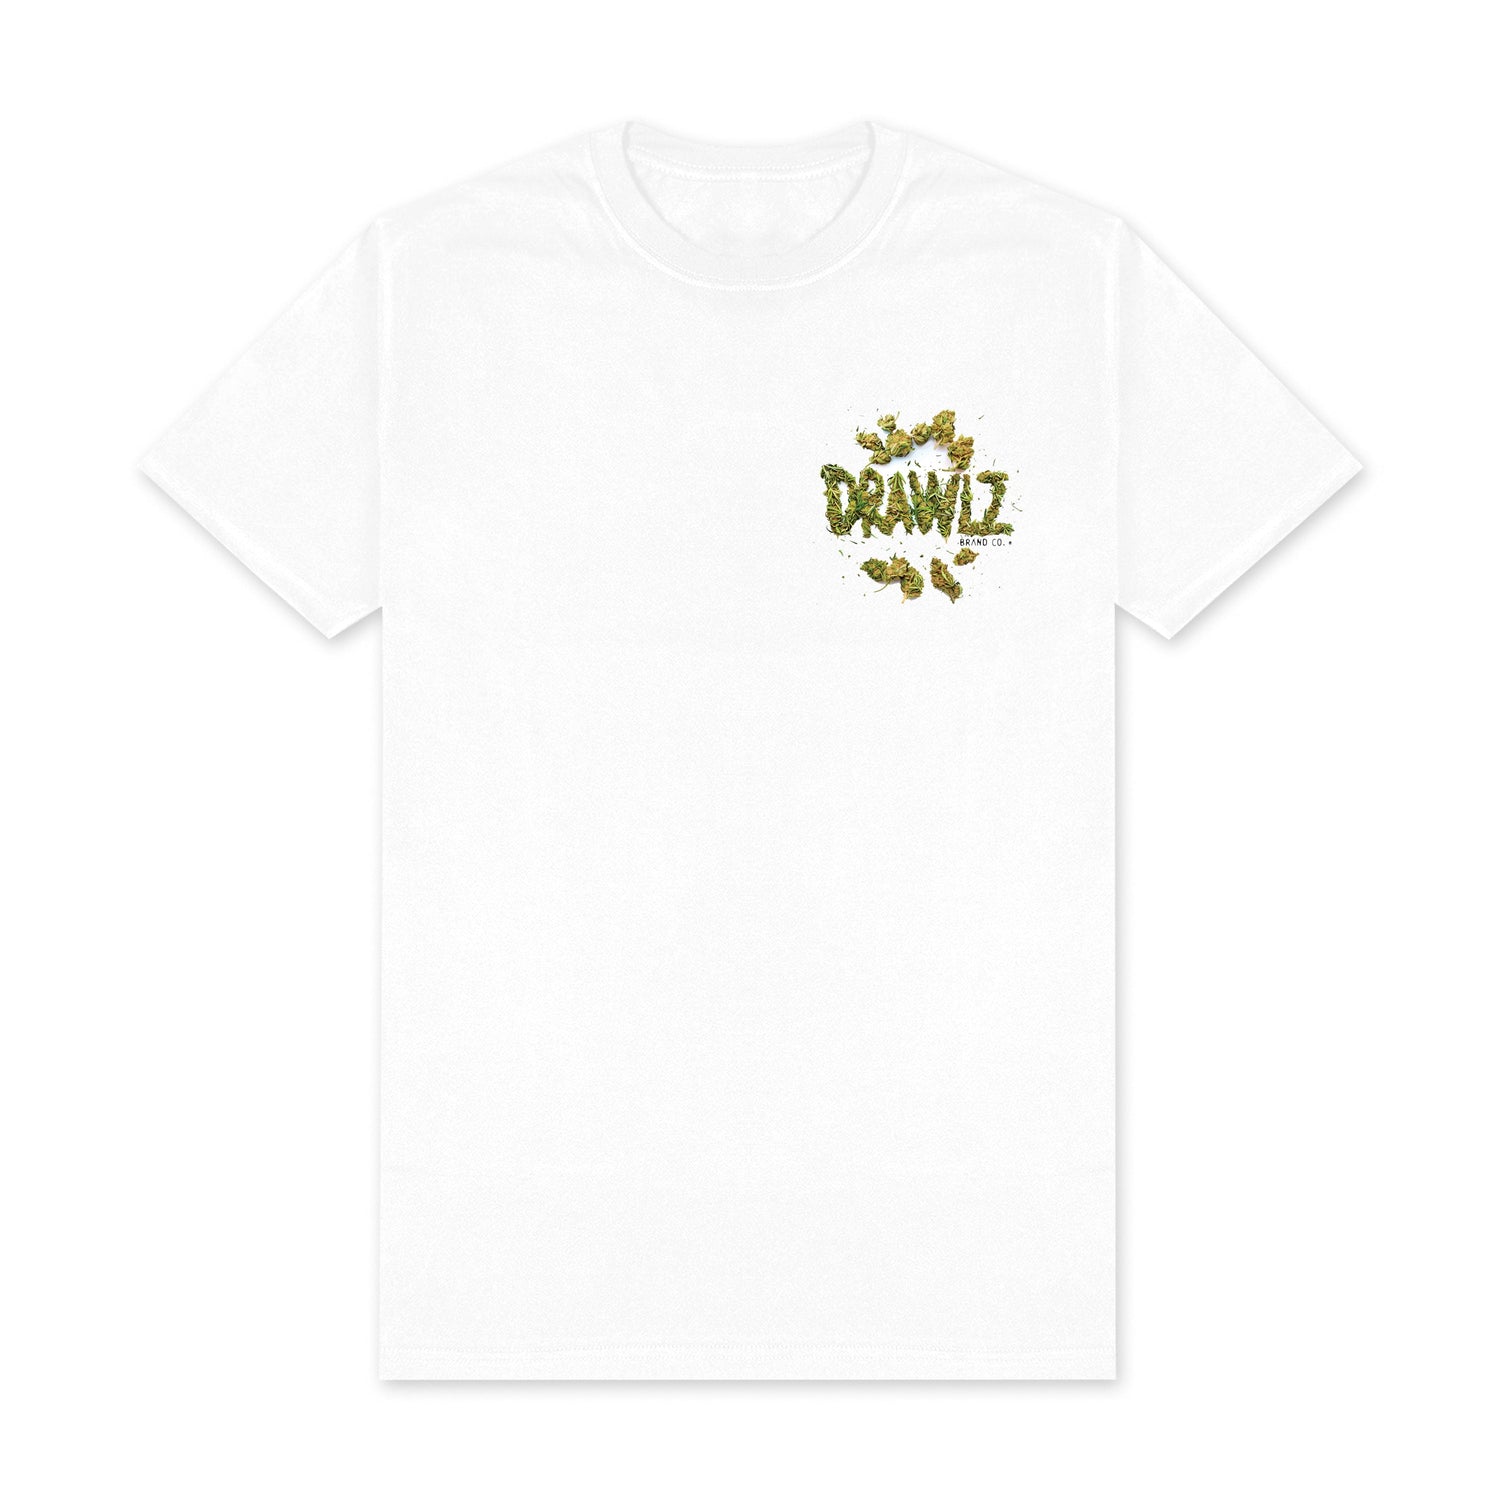 Drawlz Brand Co. , LLC tshirt 420 BE HAPPY T 420 DRAWLZWOOD TShirt